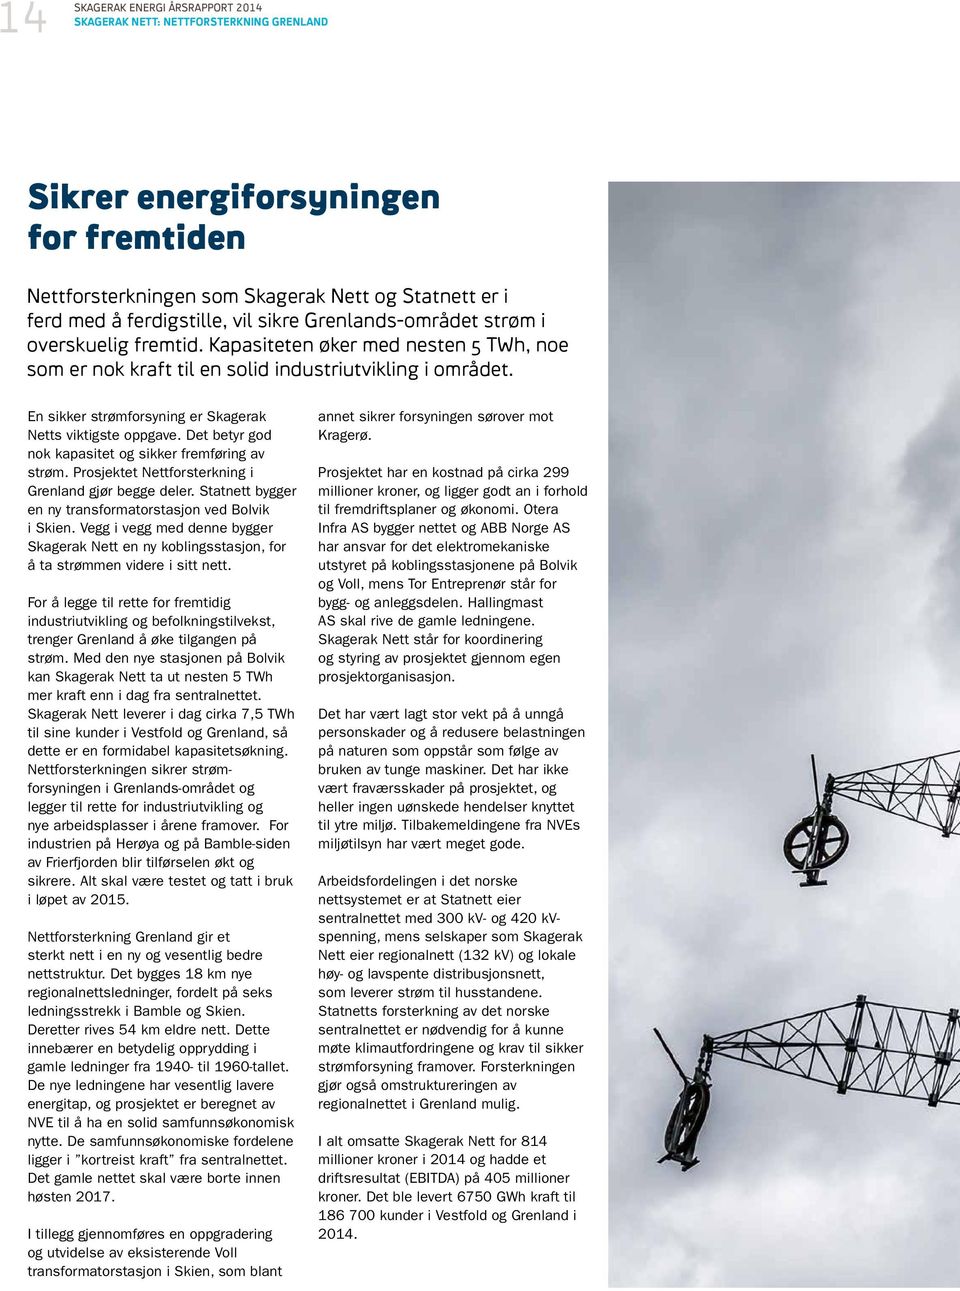 En sikker strømforsyning er Skagerak Netts viktigste oppgave. Det betyr god nok kapasitet og sikker fremføring av strøm. Prosjektet Nettforsterkning i Grenland gjør begge deler.